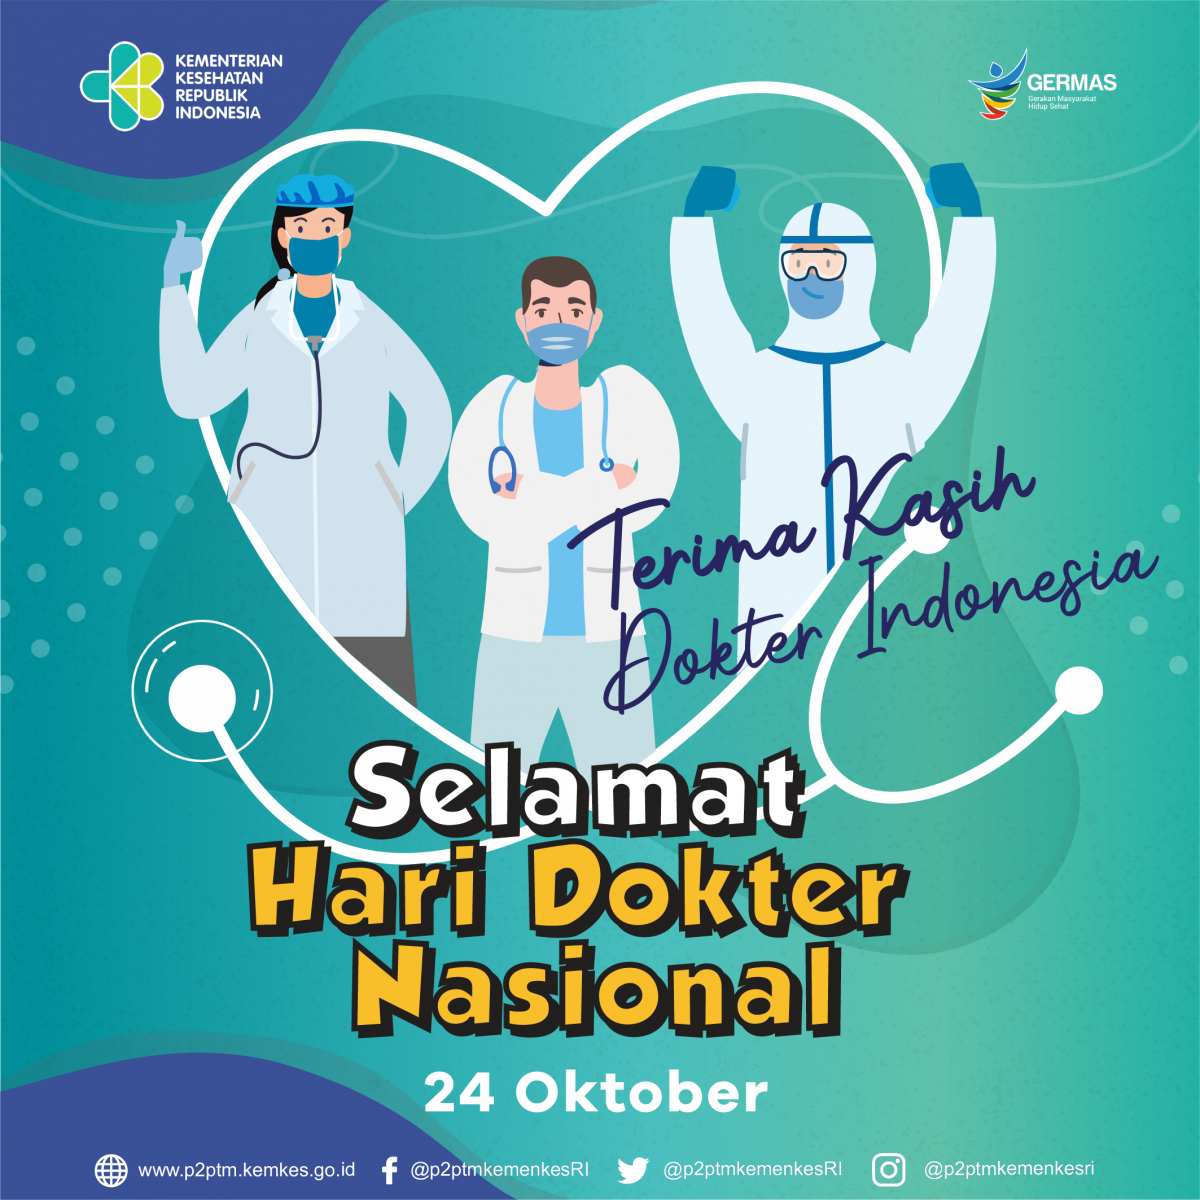 Selamat Hari Dokter Nasional 24 Oktober 2020